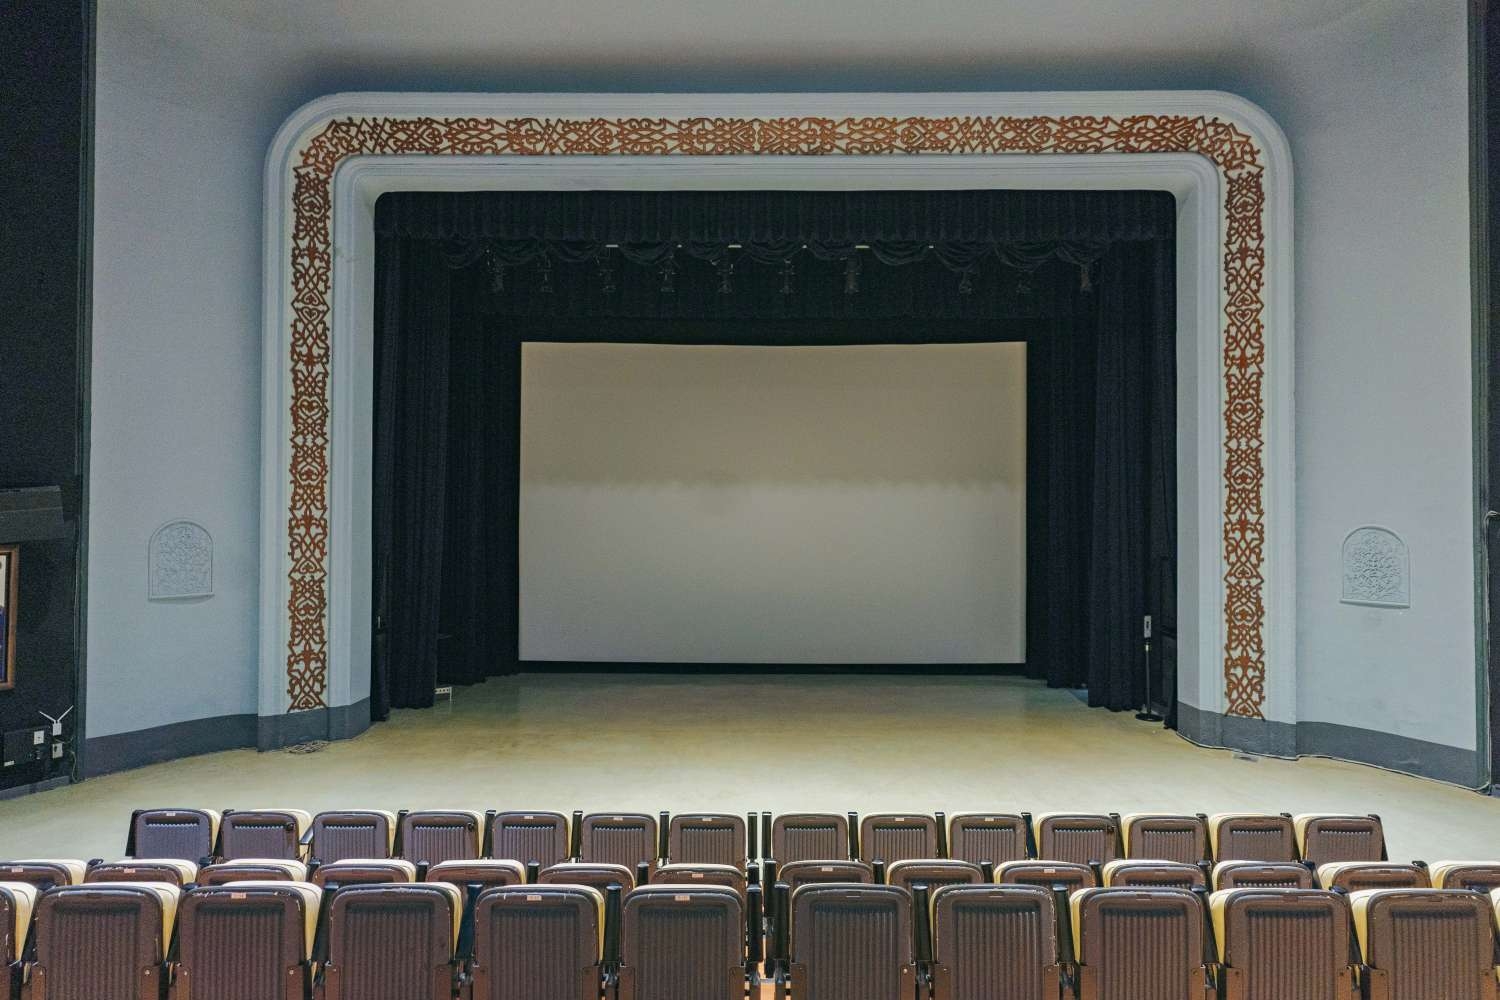 新竹市影像博物館為全台首座有冷卻設備歐化劇場，內部近200個座位，影廳硬體設備升級。|